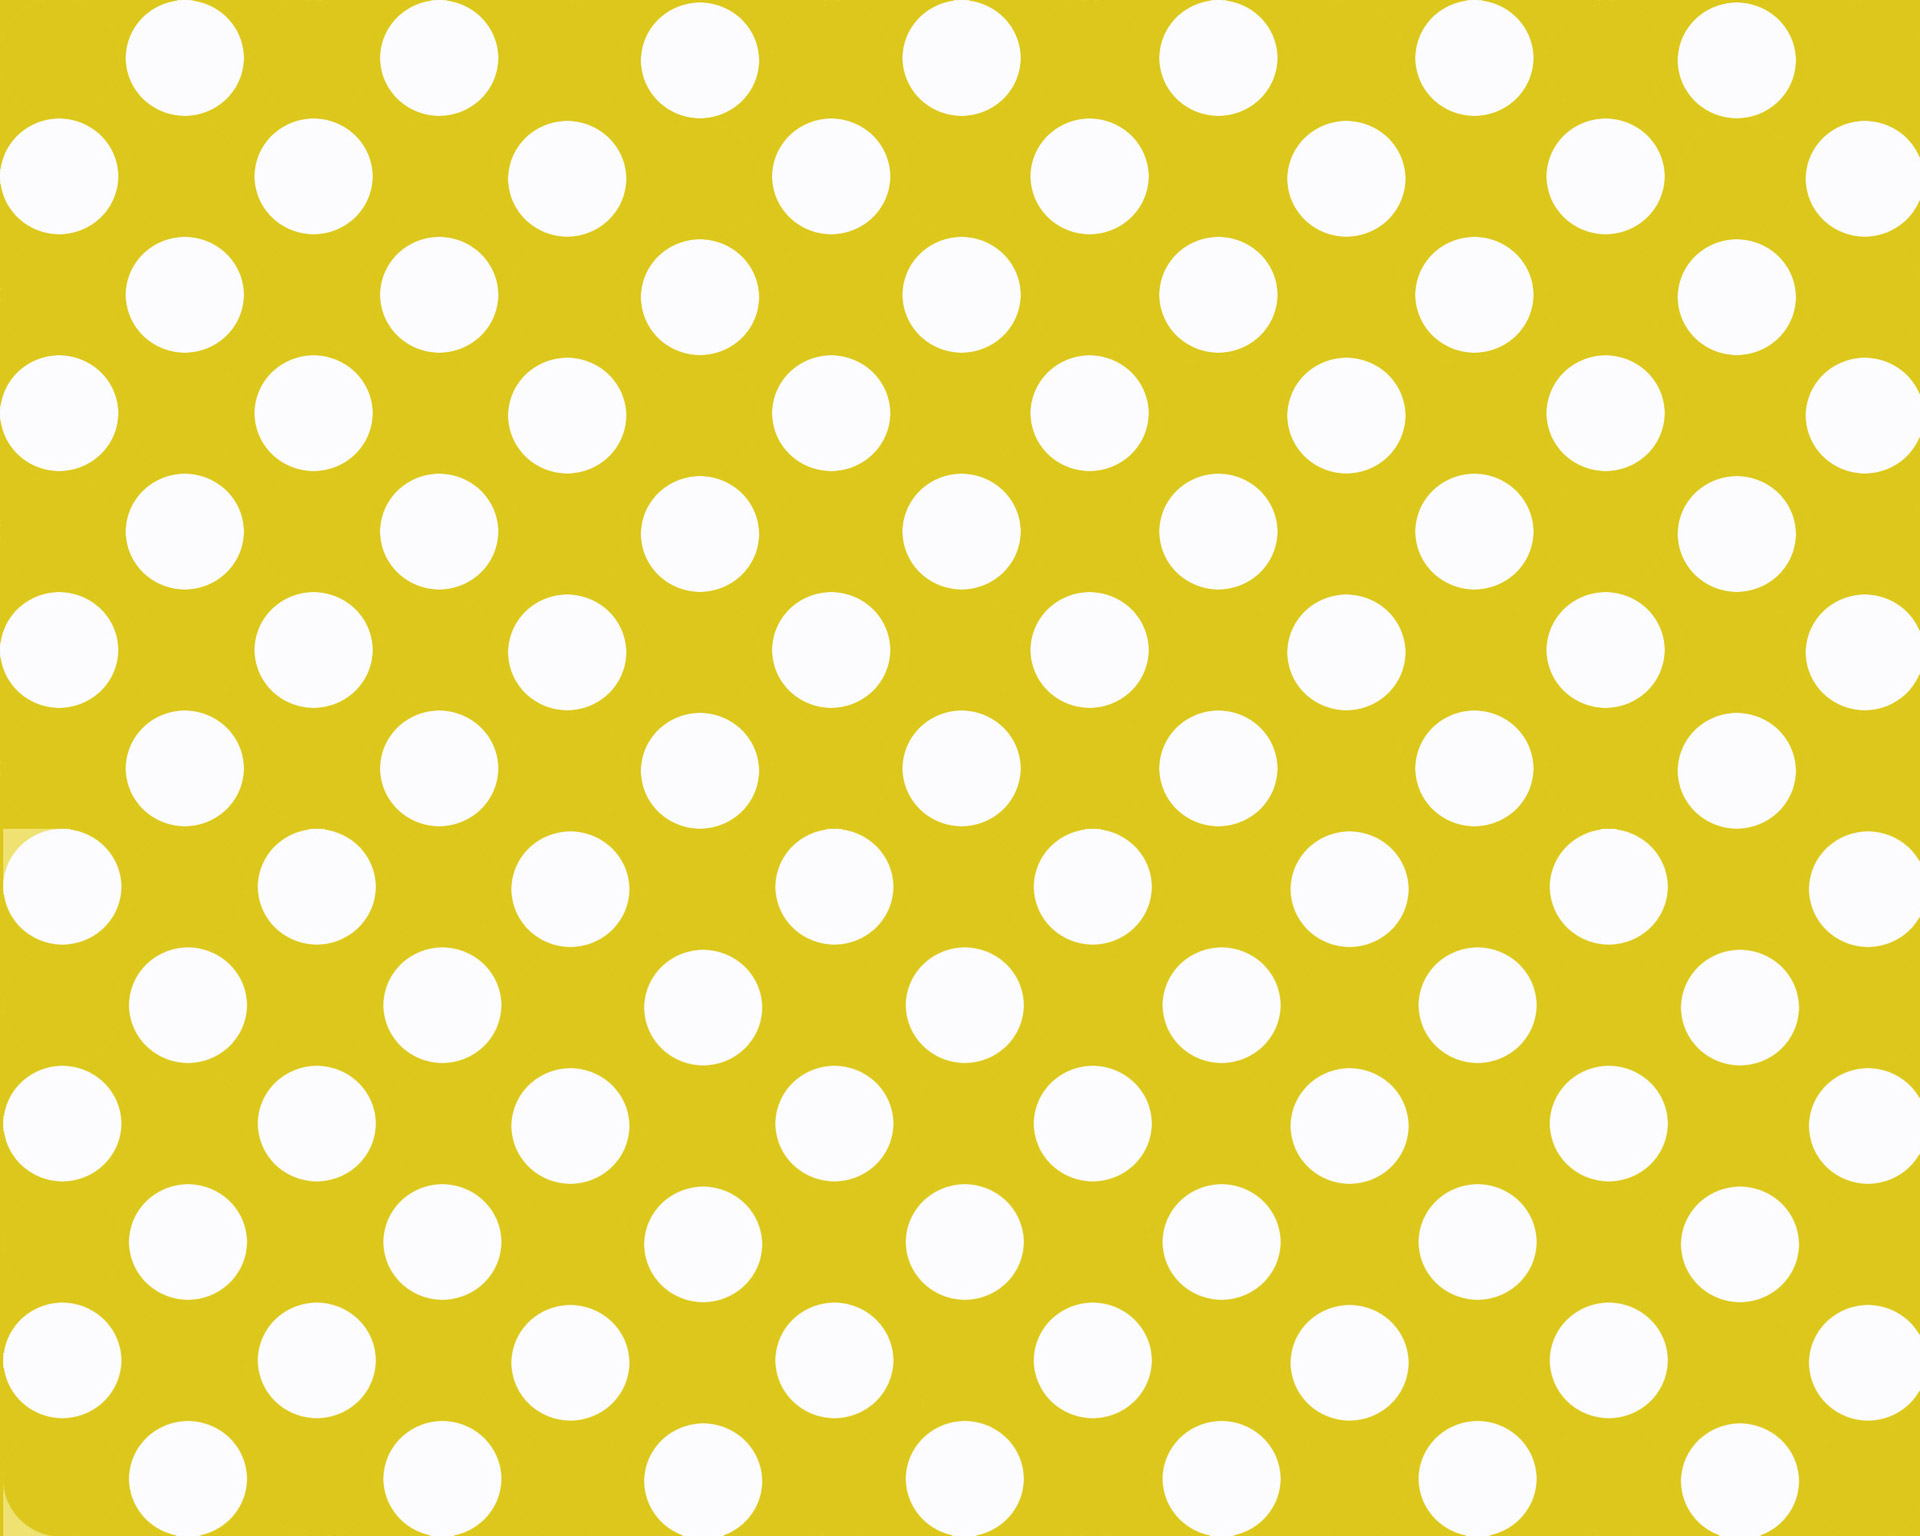 yellow polka dots wallpaper